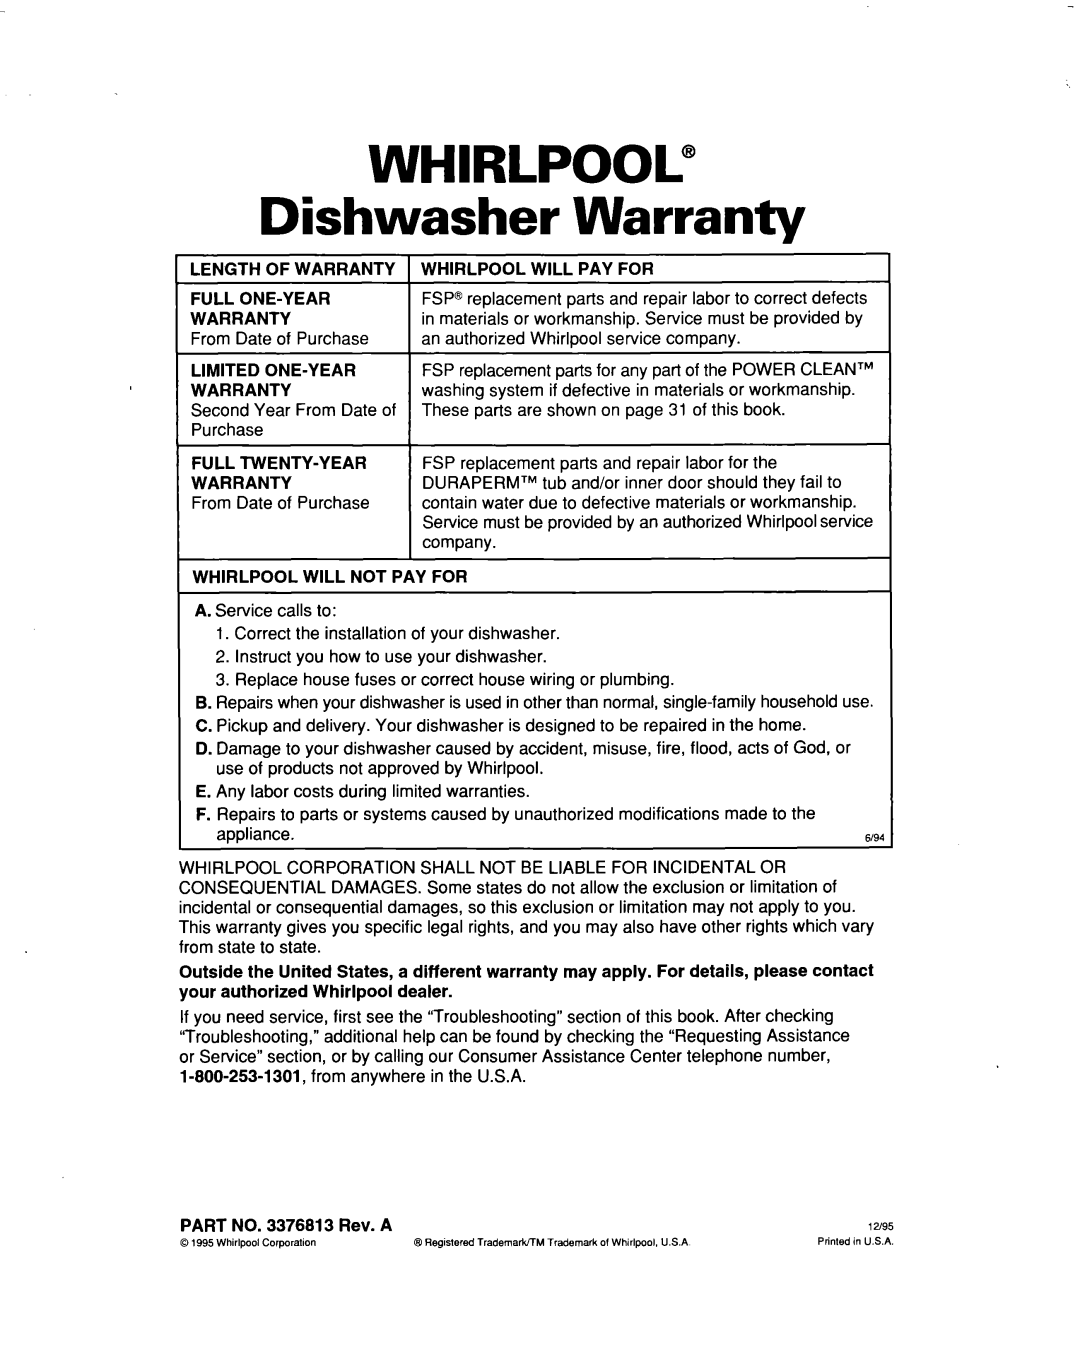 Whirlpool 915 warranty Whirlpool”, Warranty, Dishwasher 